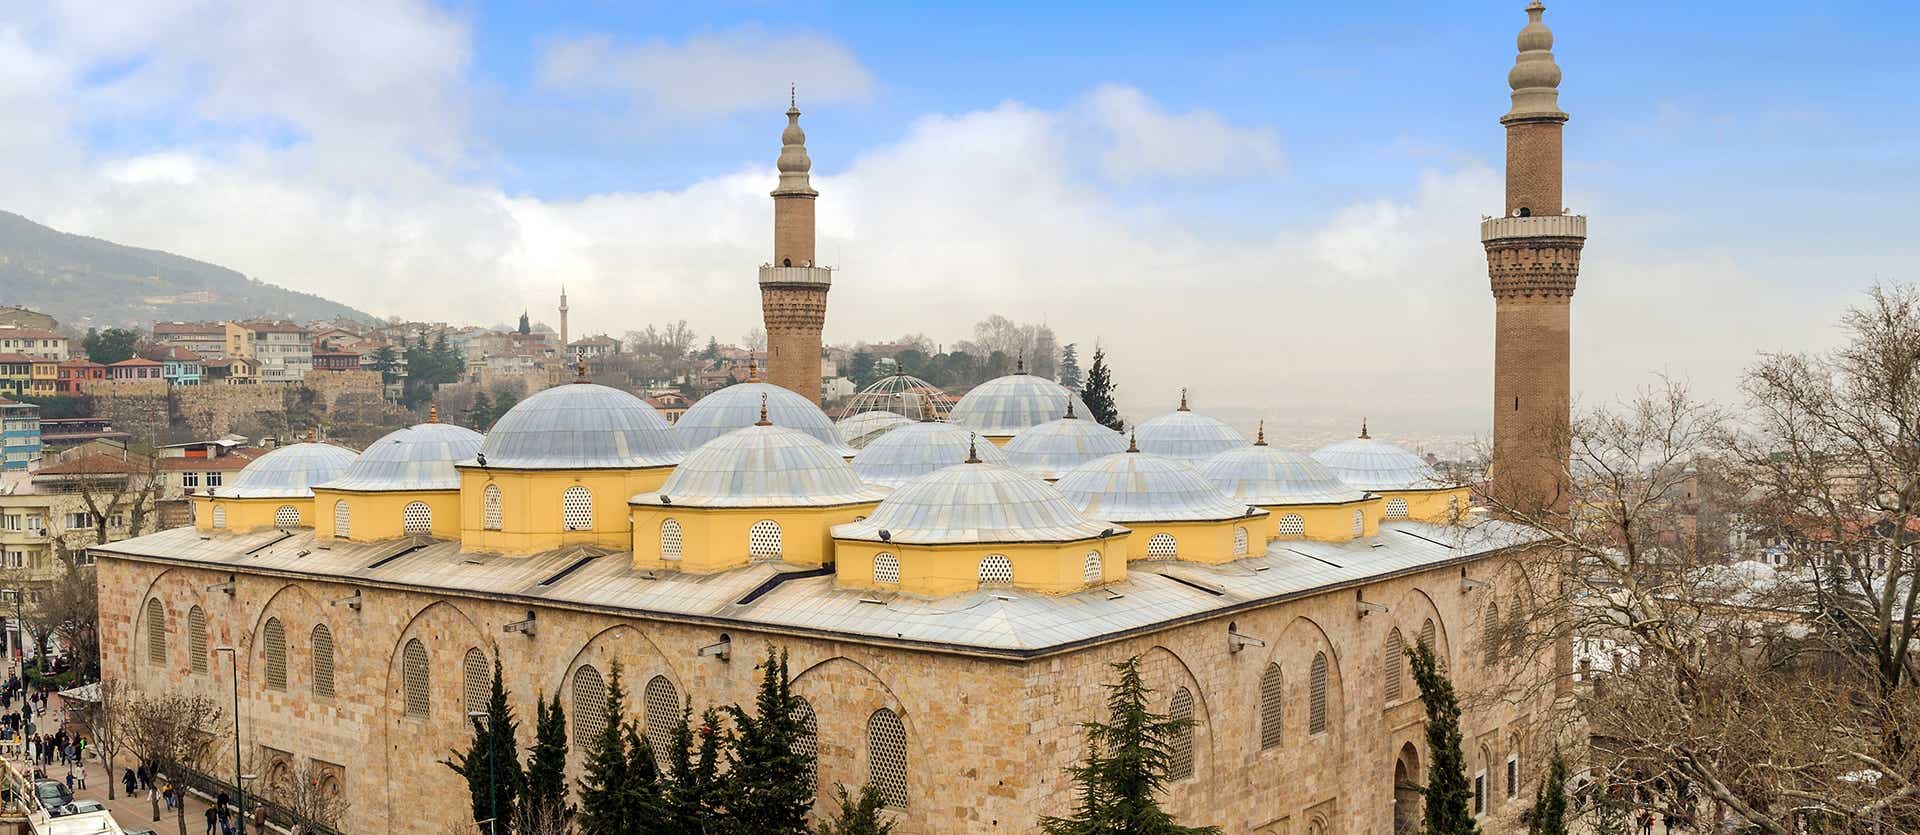 Die große Moschee <span class="iconos separador"></span> von Bursa 